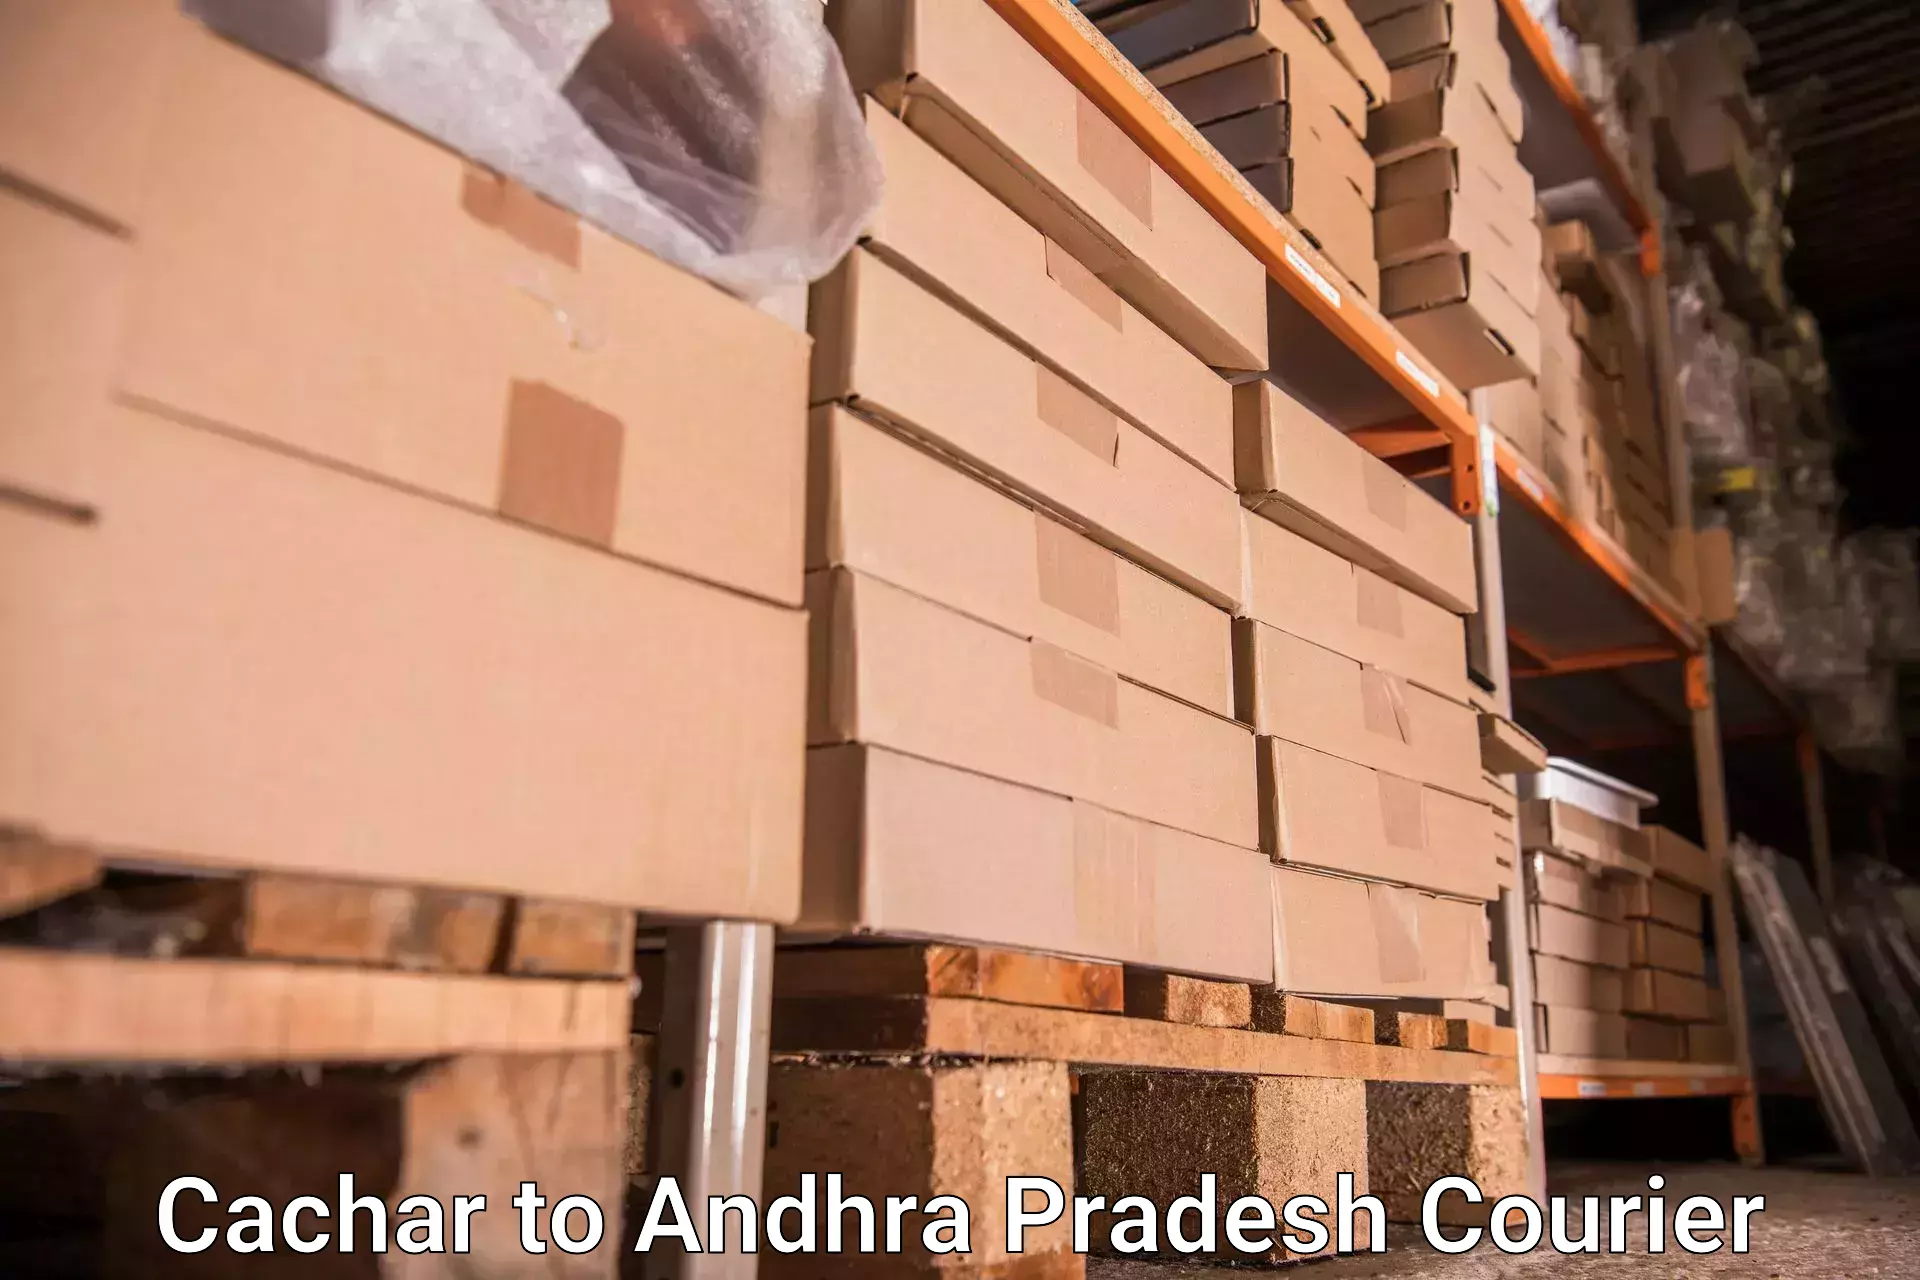 Luggage shipment tracking Cachar to Gopalapuram